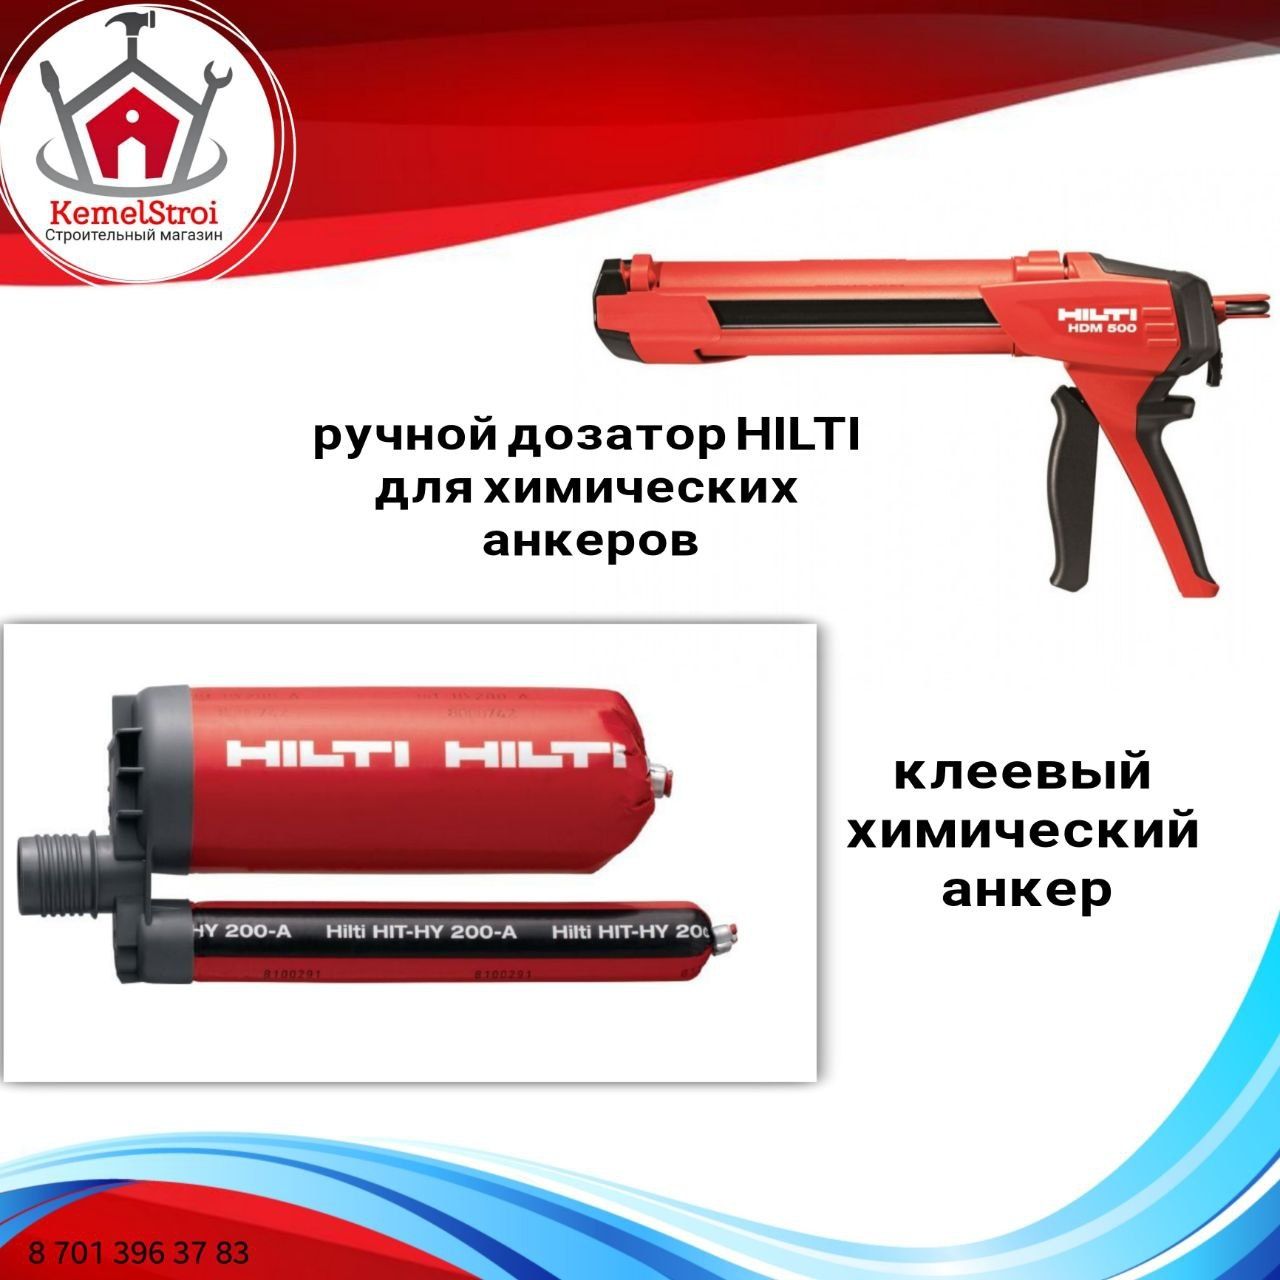 Hilti (хилти) HIT-HY 200-A 500/2 Клеевой анкер